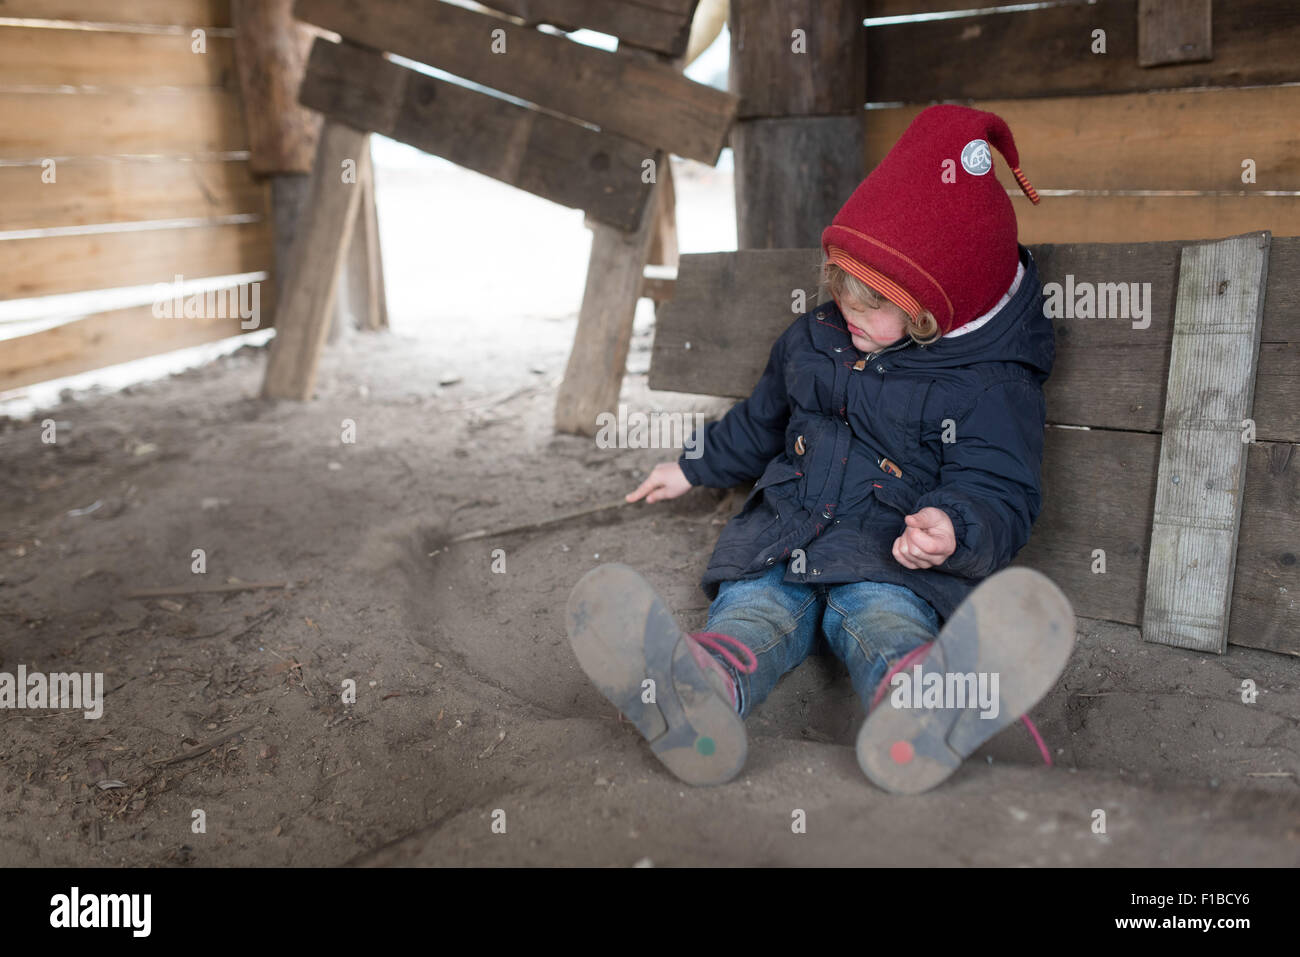 Petite fille jouant avec un bâton dans le sable à une aire de jeux Banque D'Images